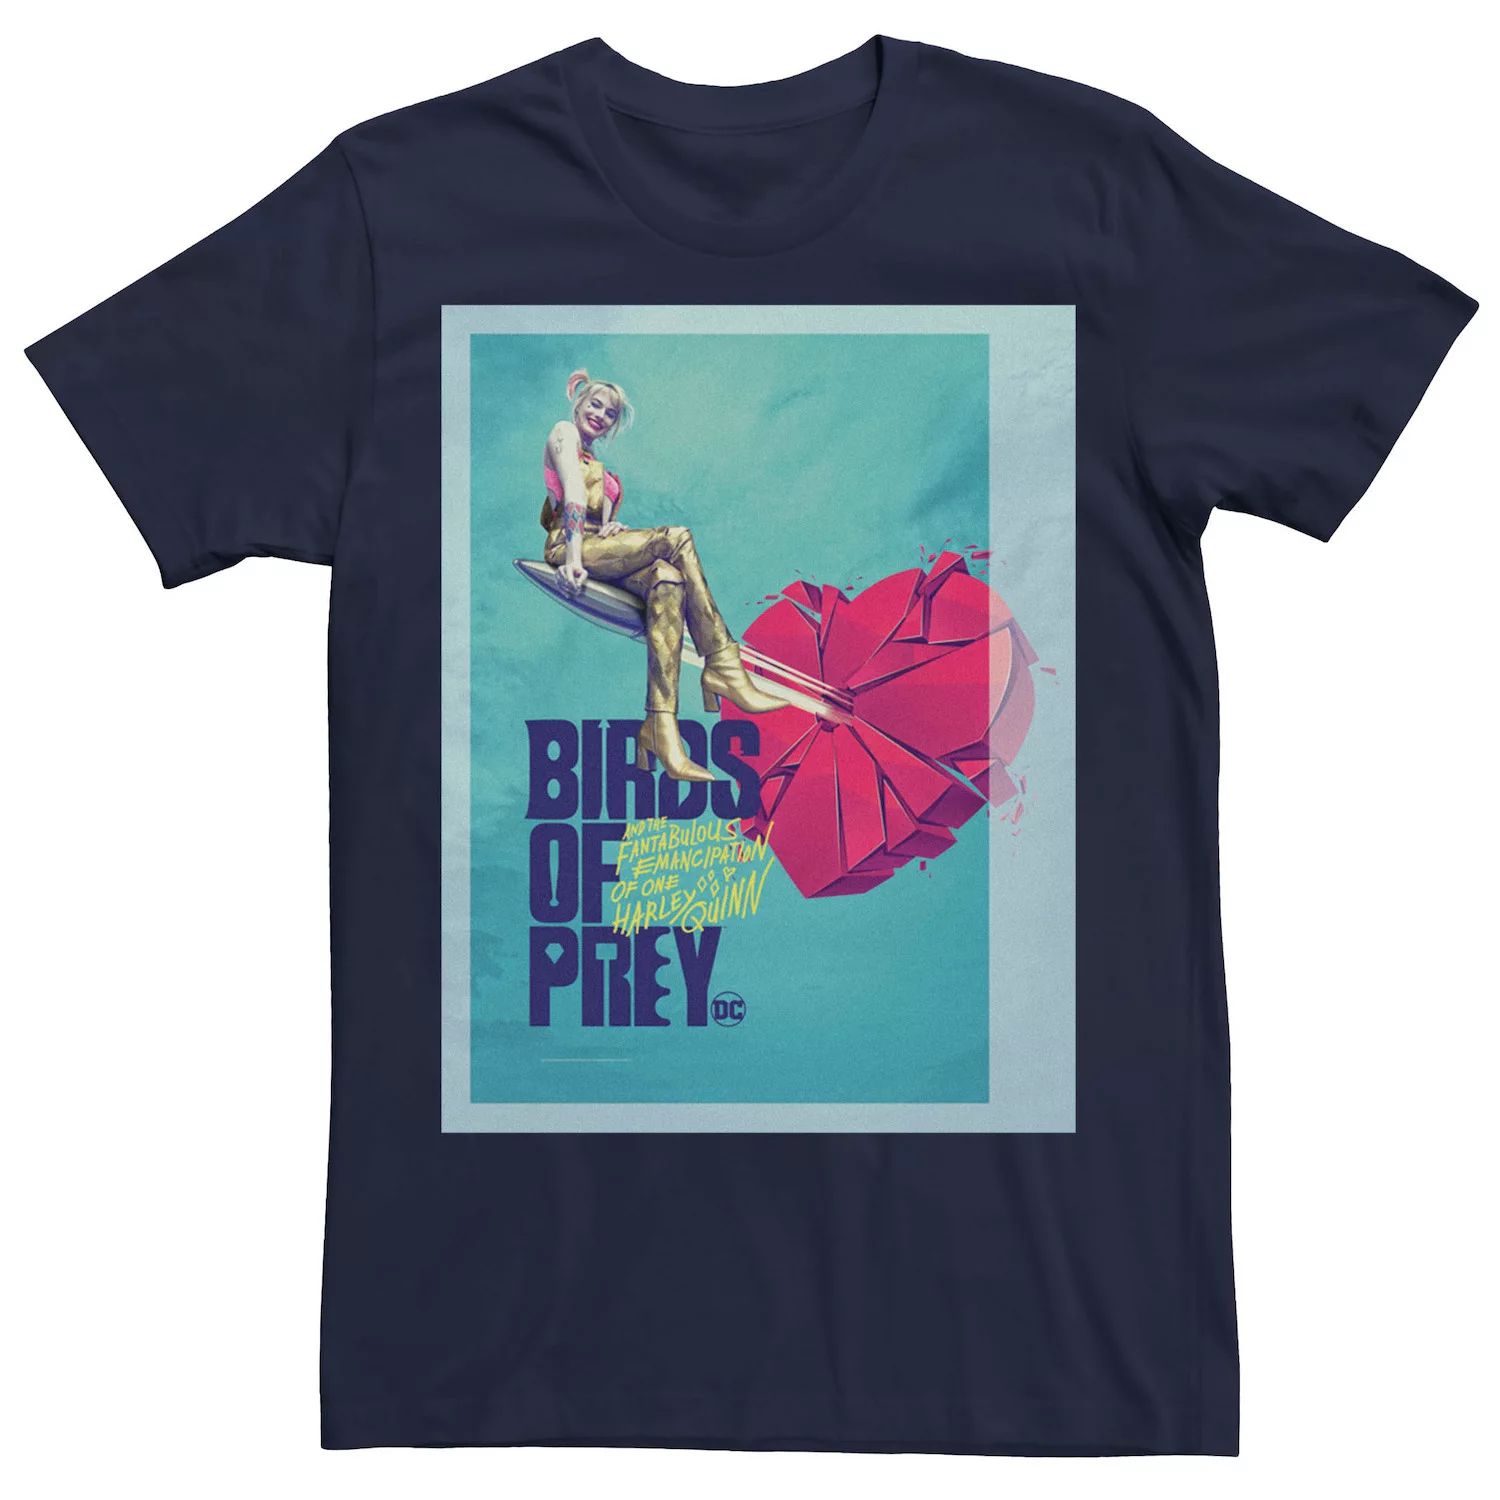 Мужская футболка с плакатом Birds Of Prey Harley Heart Broken DC Comics мужская майка с логотипом dc comics birds of prey word stack